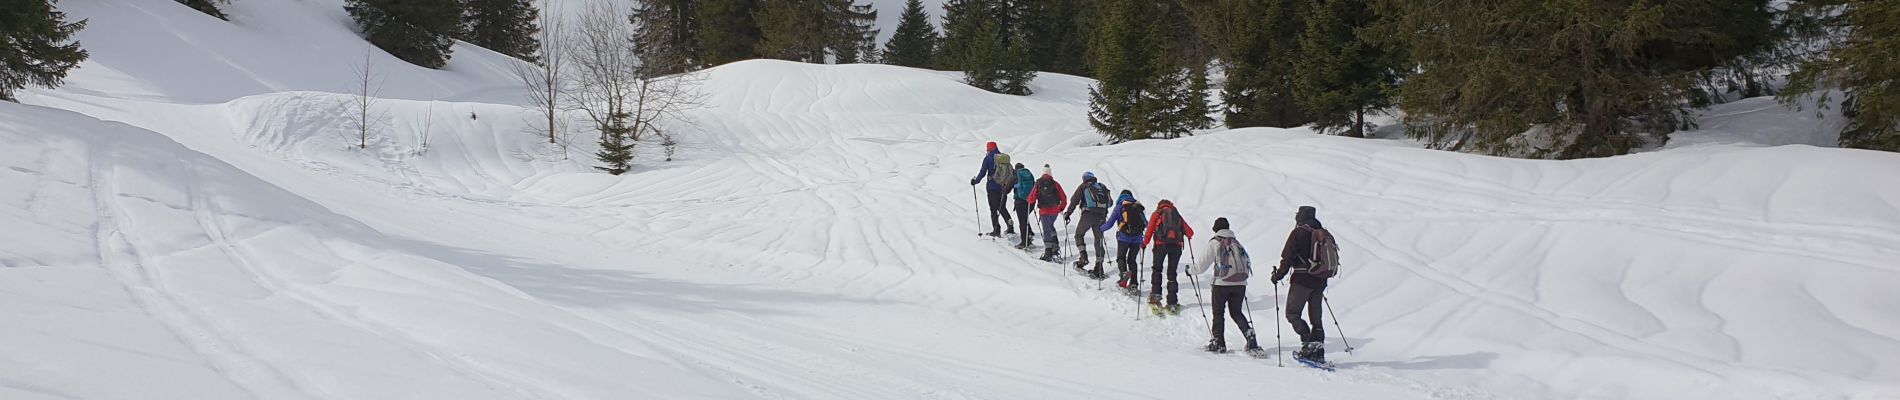 Excursión Raquetas de nieve Divonne-les-Bains - La Dole alt 1676m en raquette - Photo